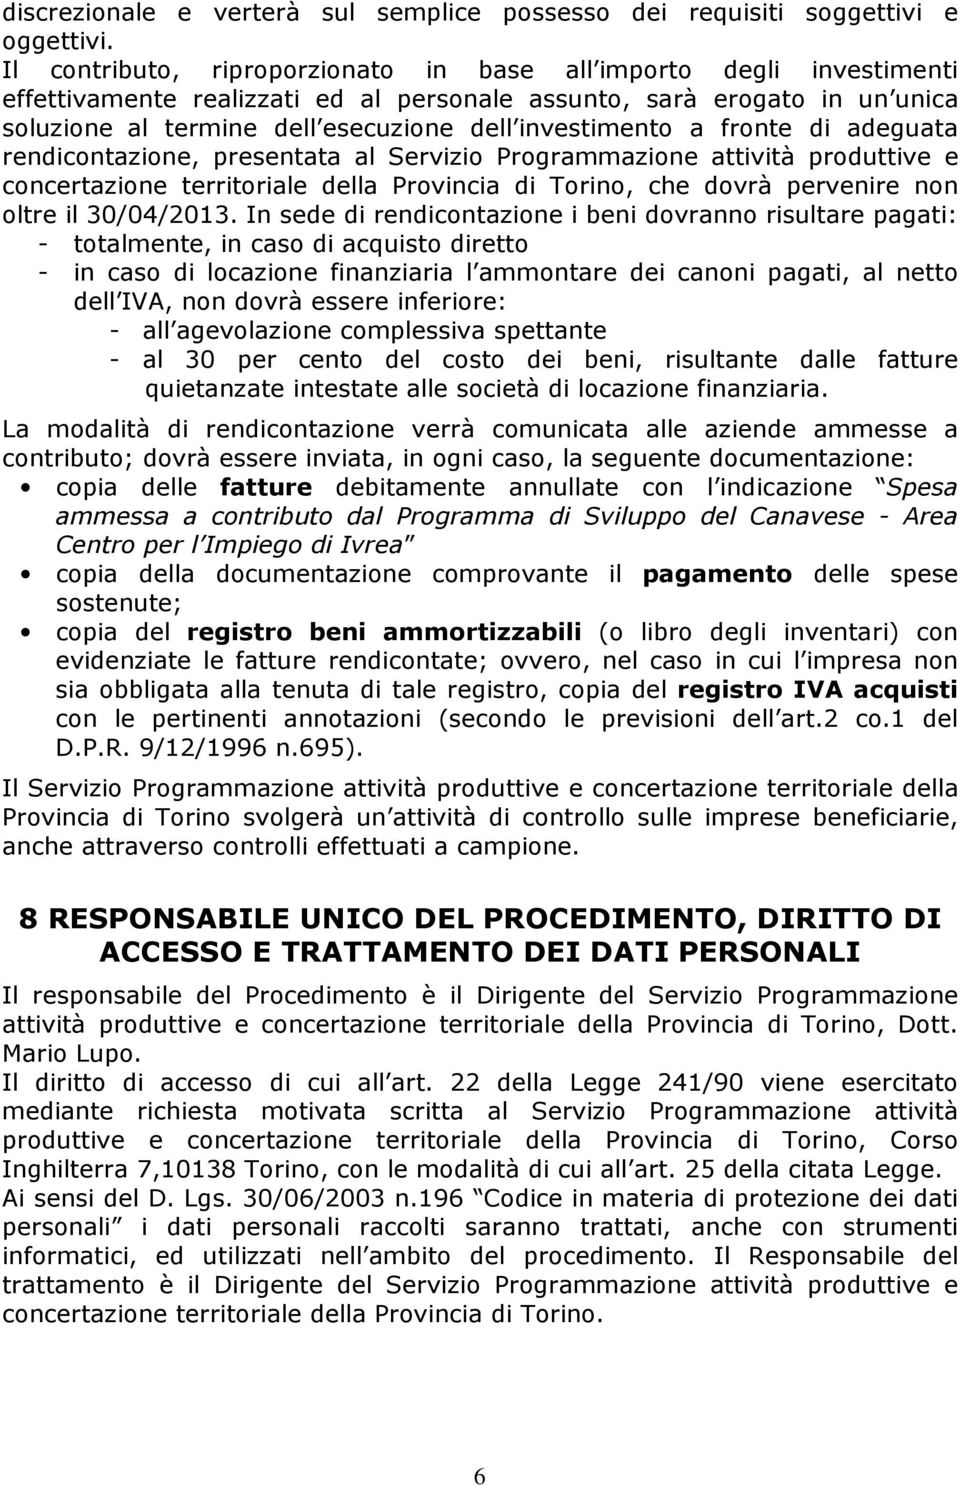 investimento a fronte di adeguata rendicontazione, presentata al Servizio Programmazione attività produttive e concertazione territoriale della Provincia di Torino, che dovrà pervenire non oltre il